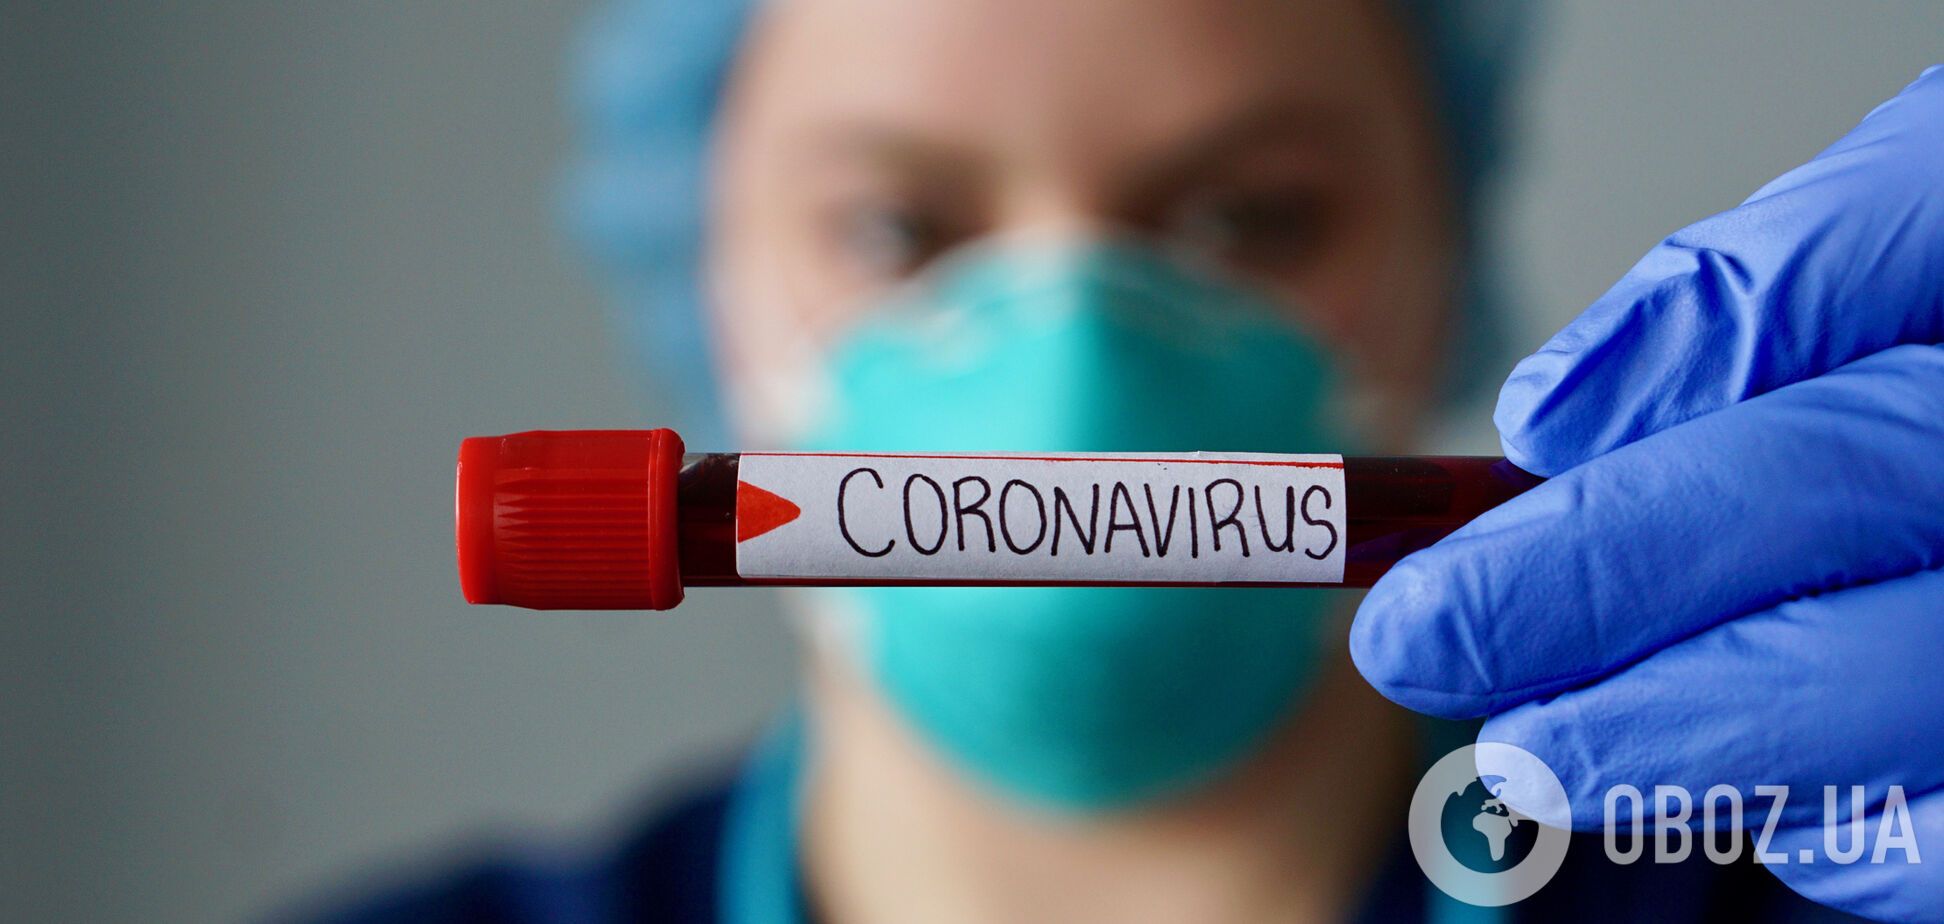 Йде друга хвиля коронавірусу, але панікувати не варто – вірусологиня